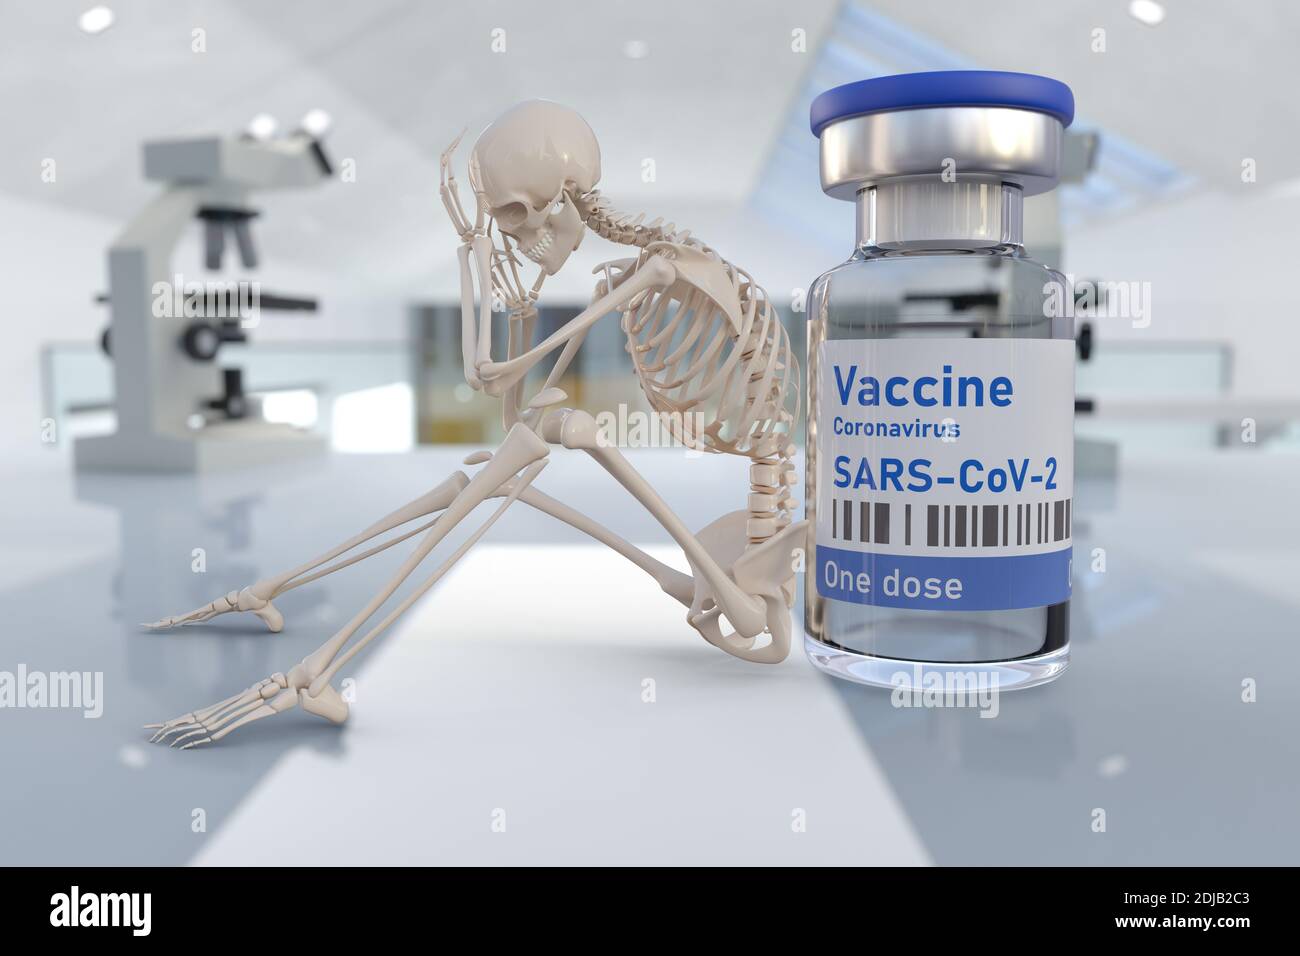 Humanes Skelett und Covid 19 Coronavirus-Impfstoff. Konzeptionelles Bild von gefährlichen Nebenwirkungen der Impfung oder sehr lange Wartezeit für die Impfung. Stockfoto